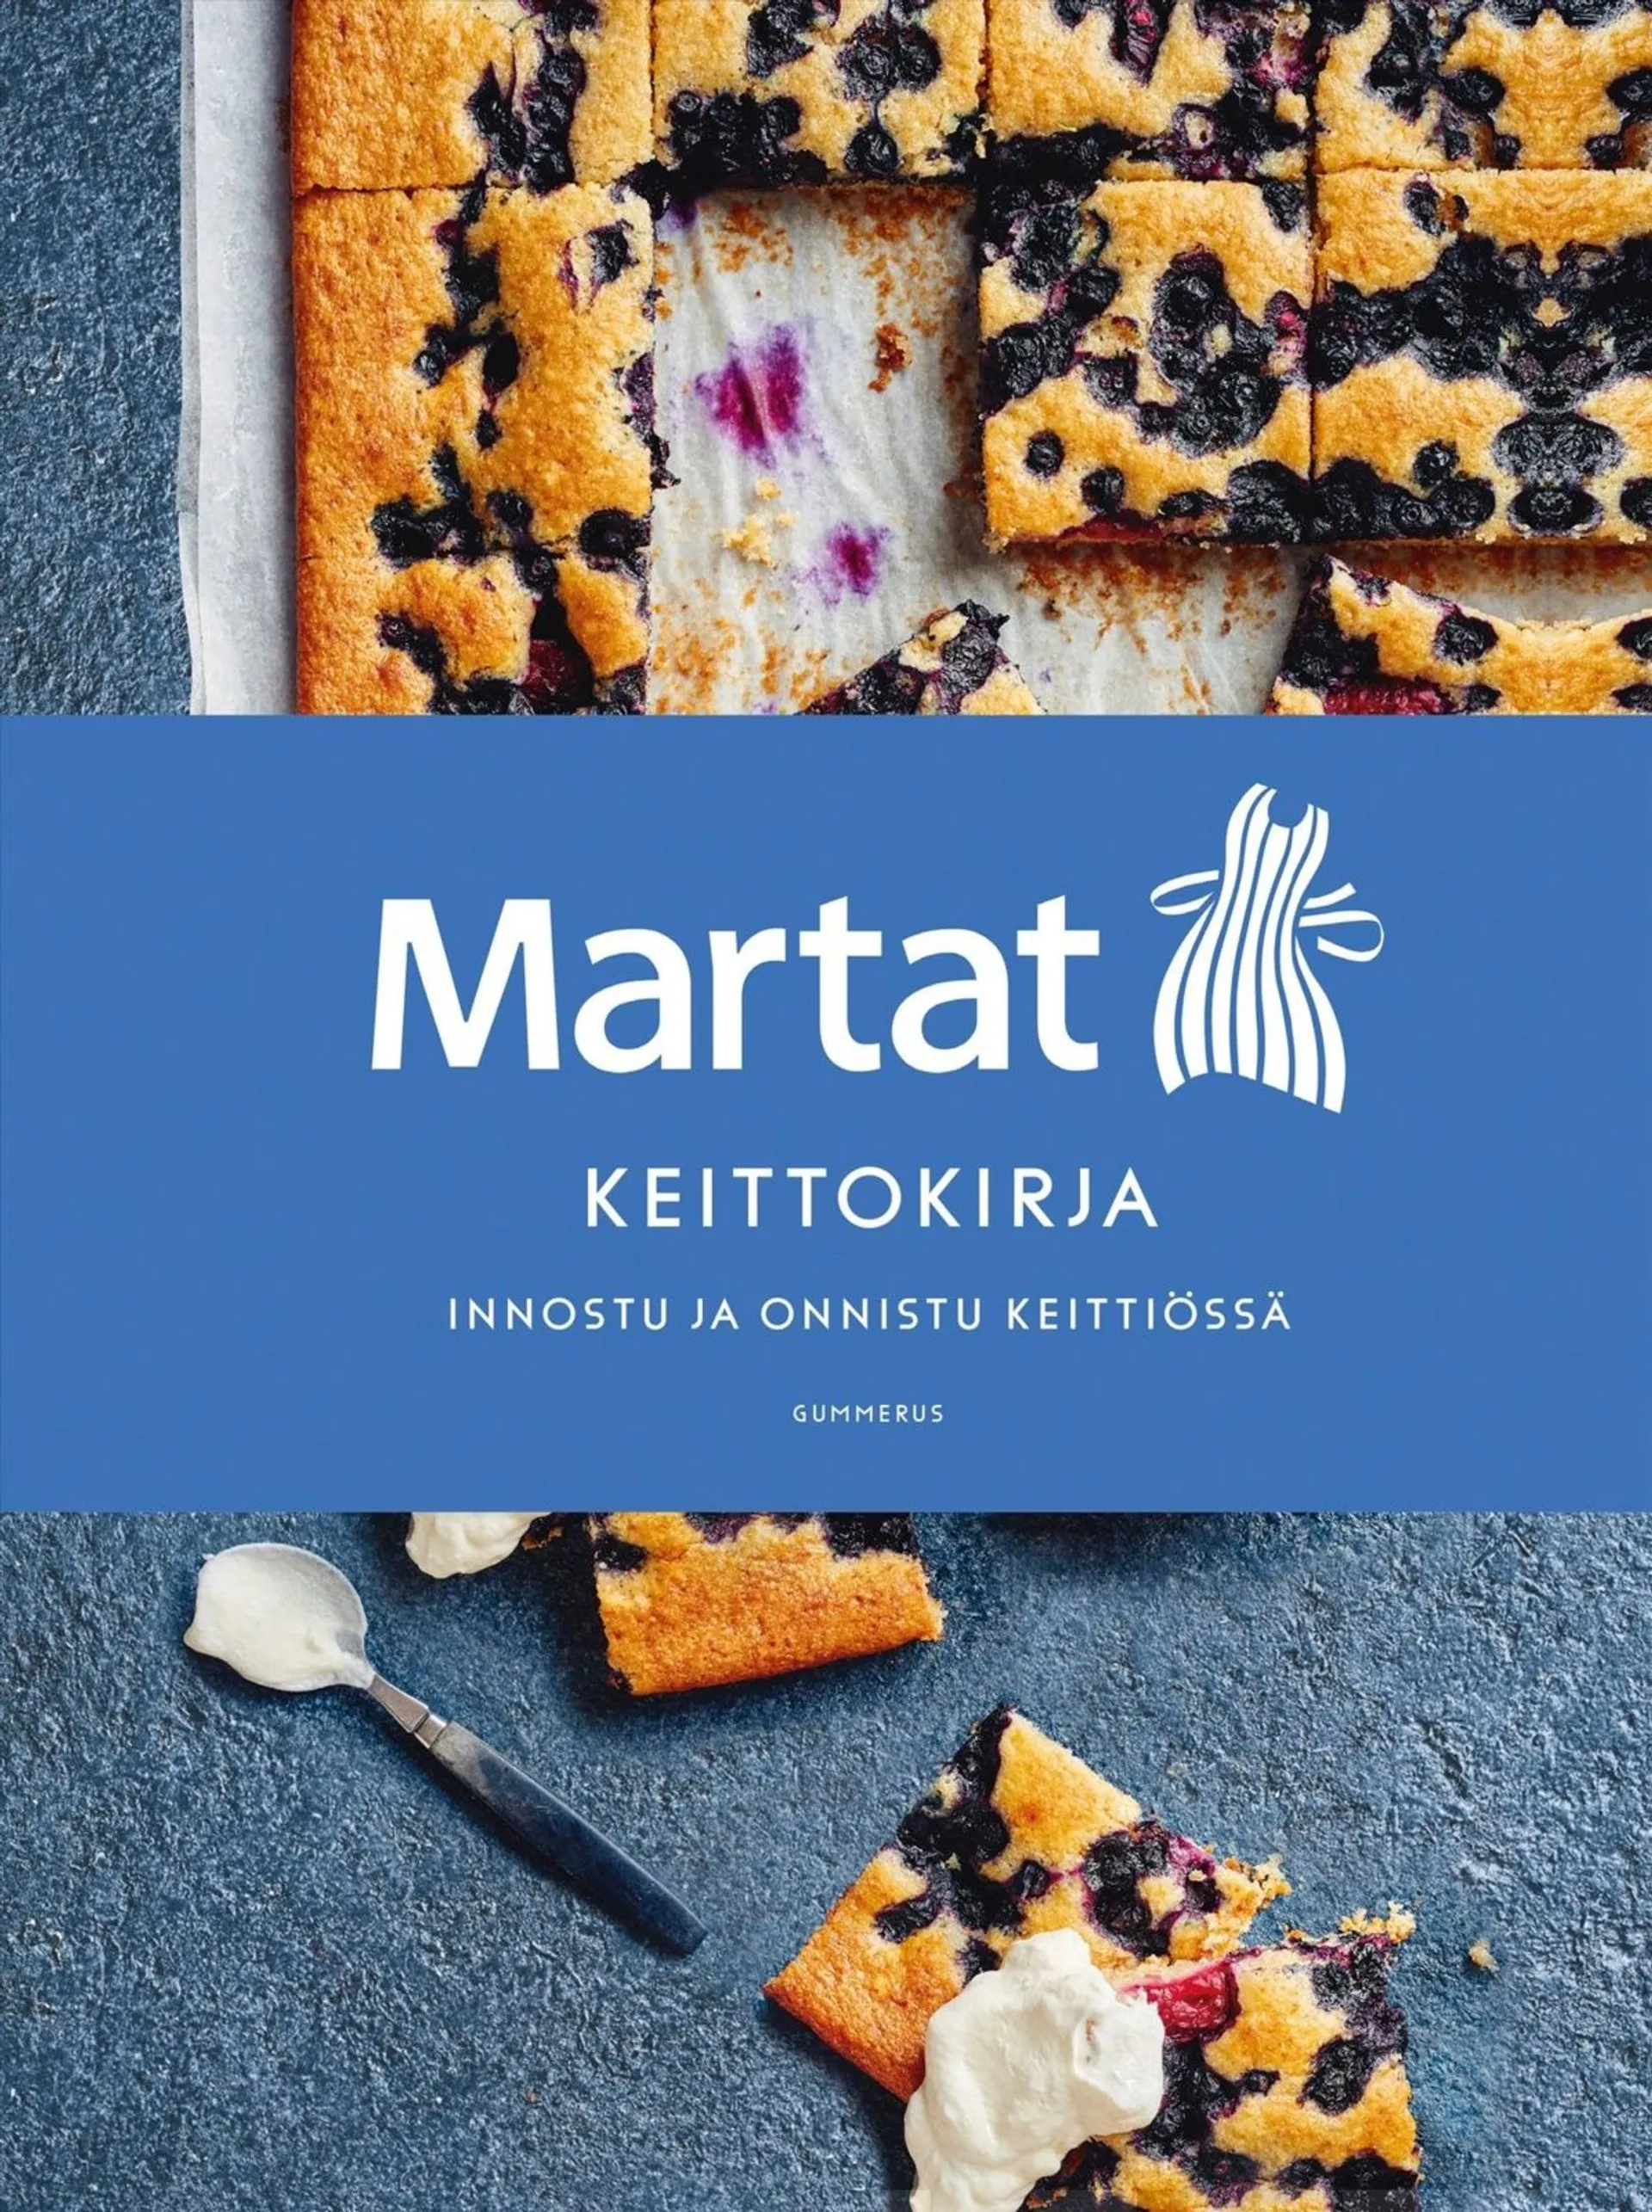 Gummerus Marttaliitto ry: Martat - keittokirja